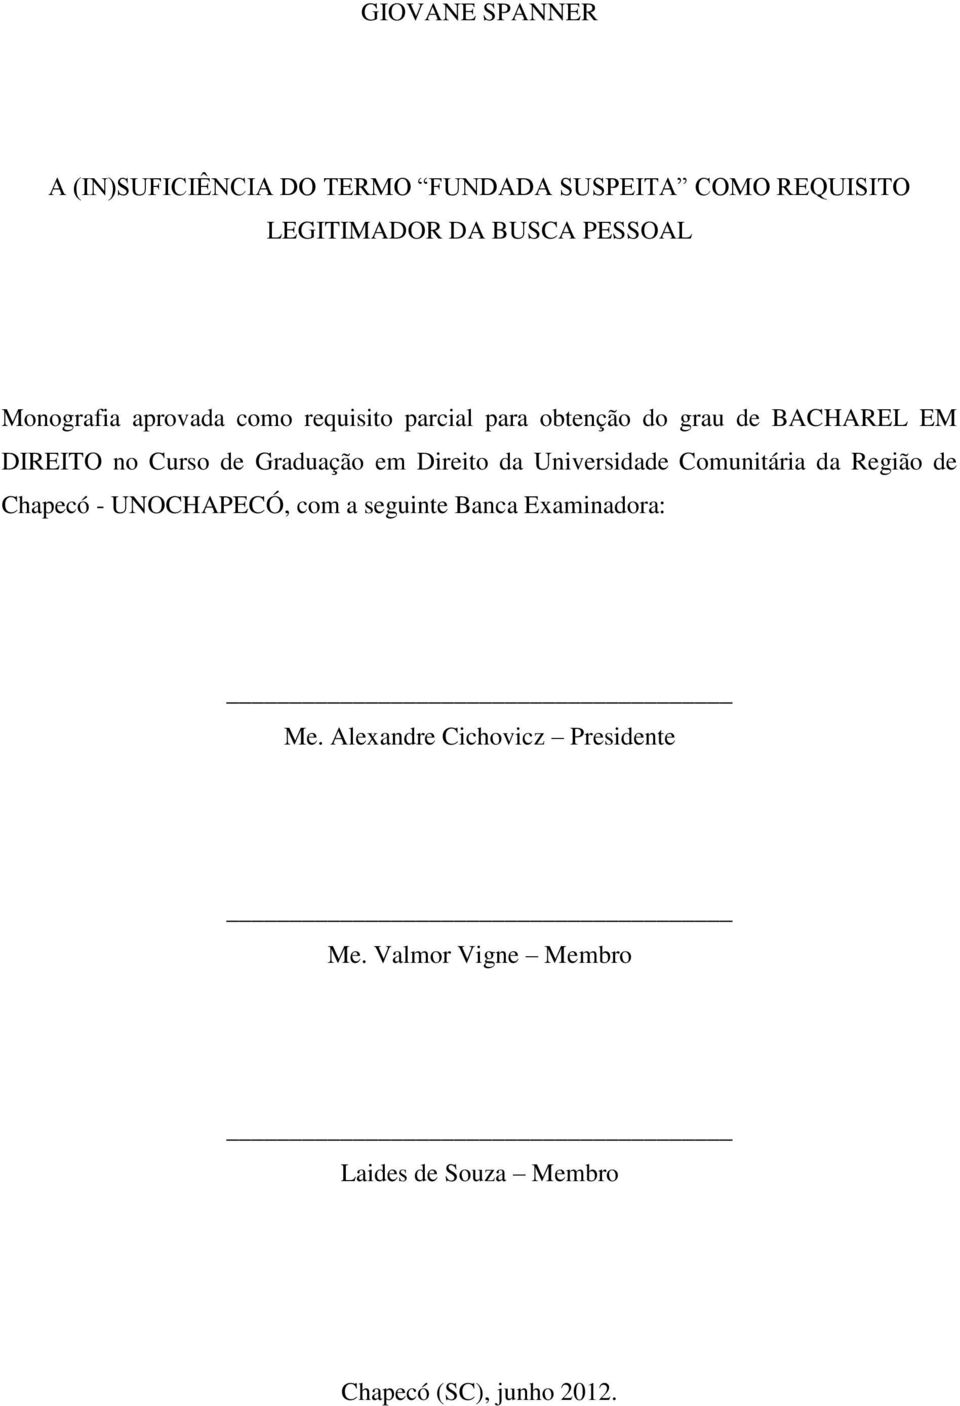 Graduação em Direito da Universidade Comunitária da Região de Chapecó - UNOCHAPECÓ, com a seguinte Banca